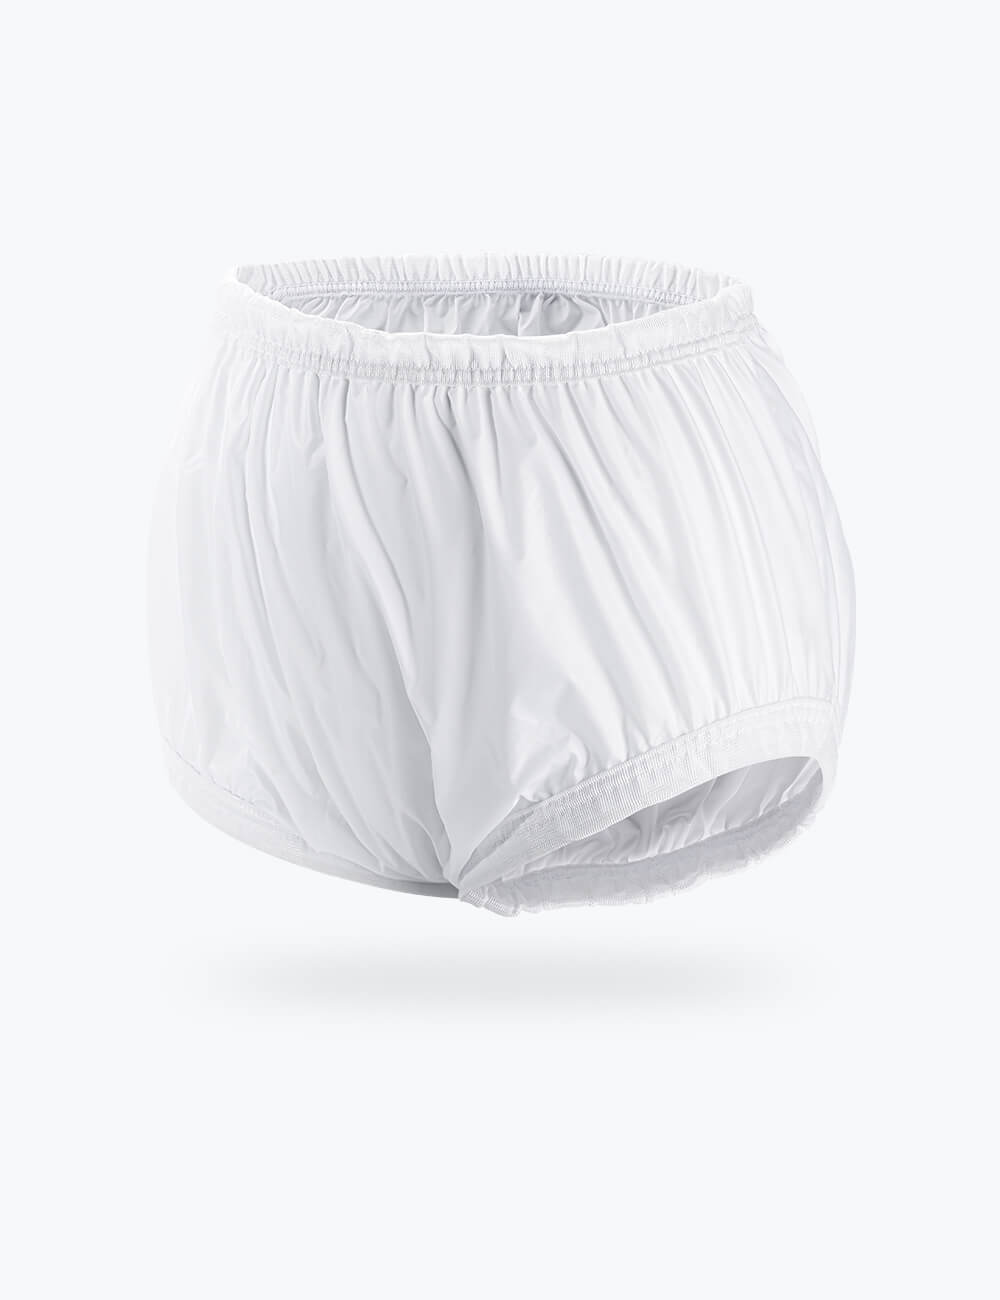 Diaper Plastic Pants Rubber Pants Underpants, PNG, 1280x1280px